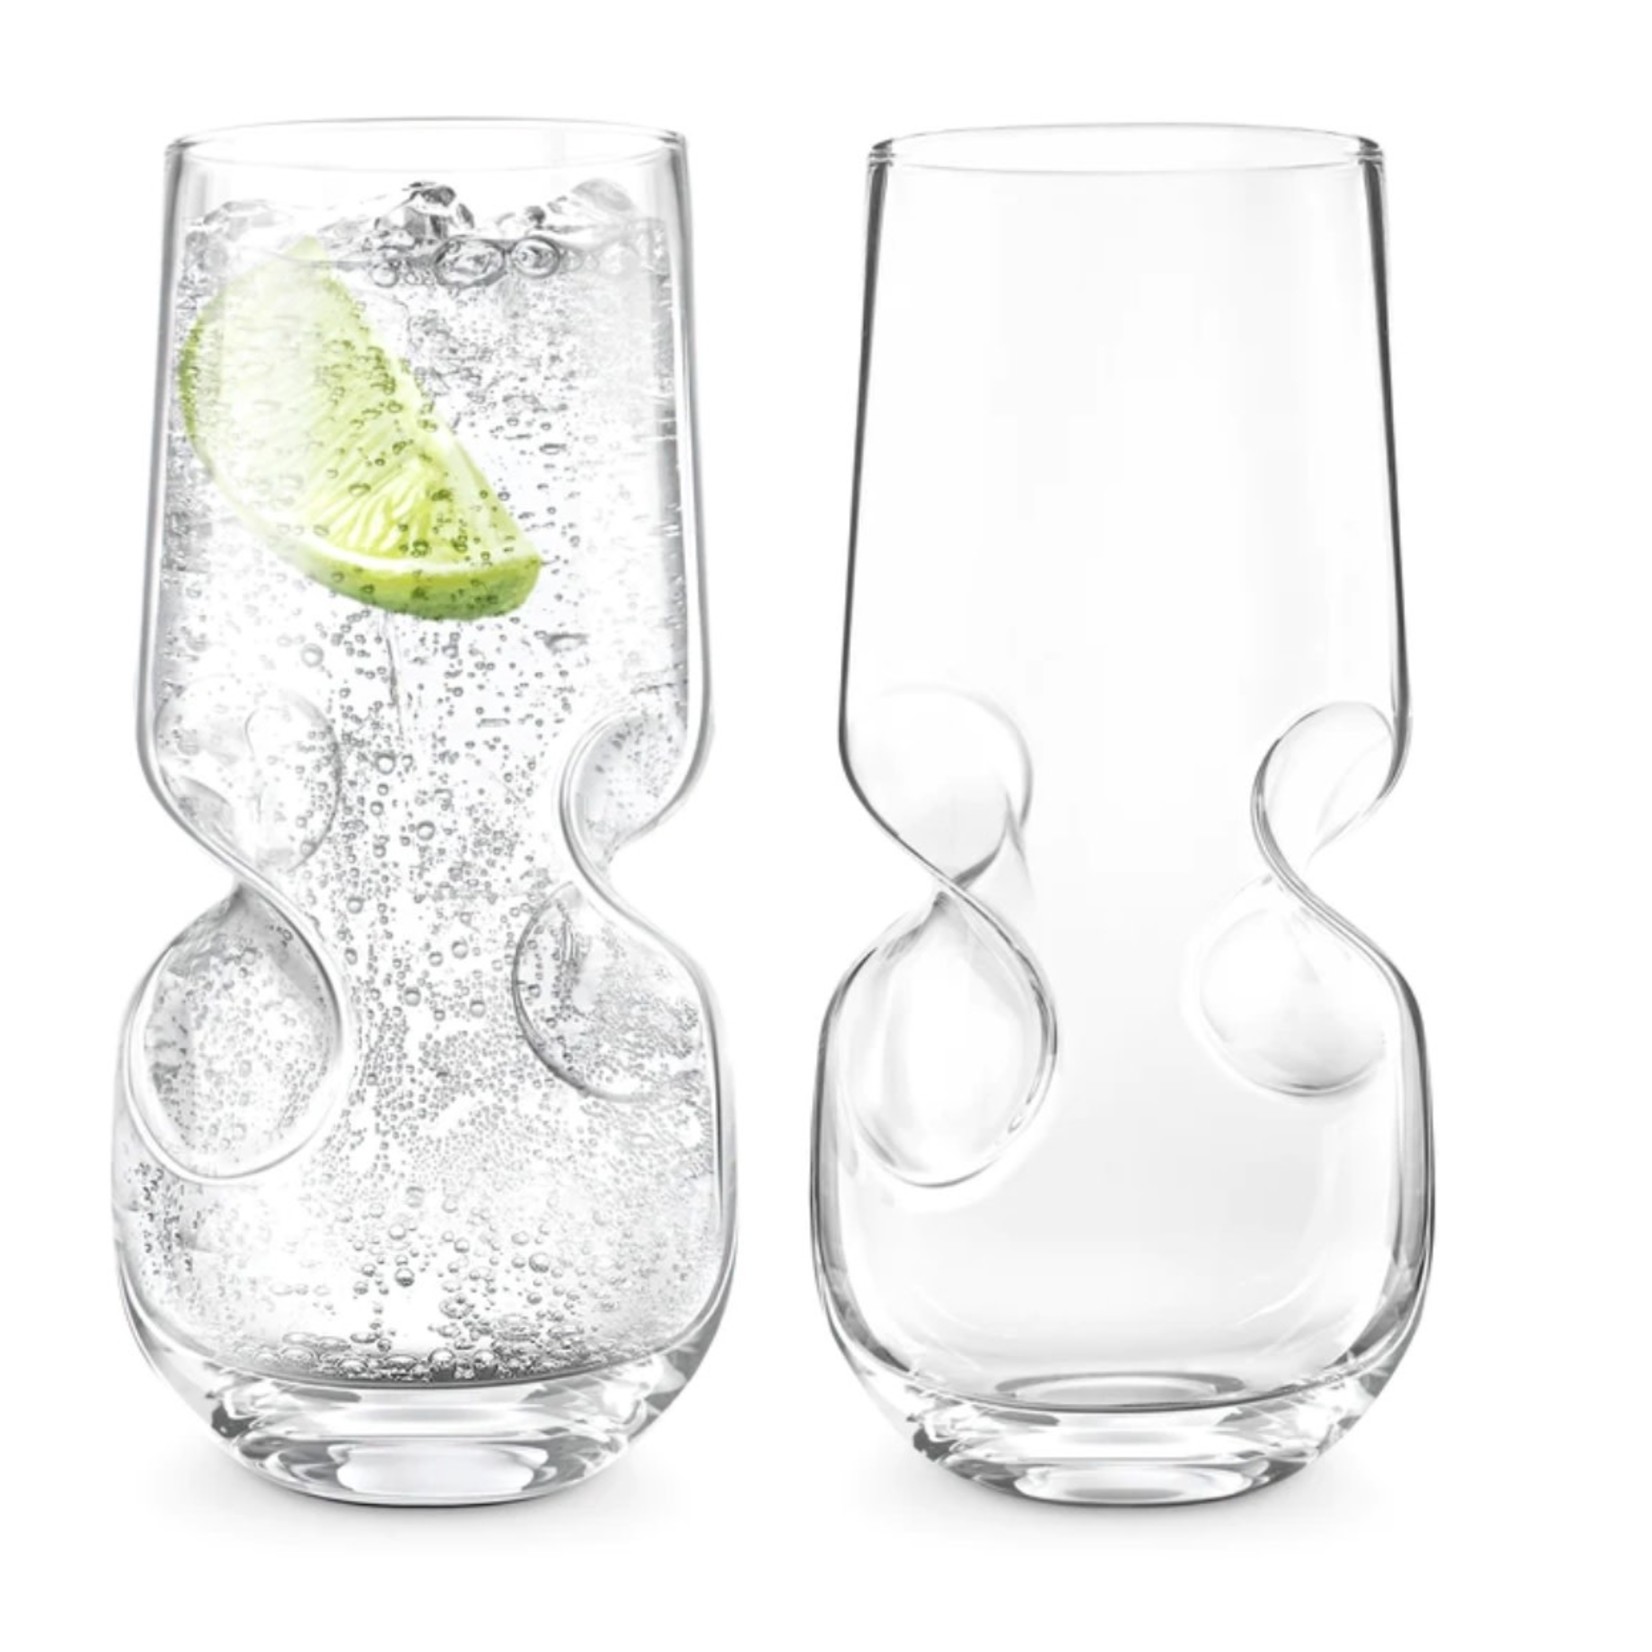 FINAL TOUCH FINAL TOUCH Bubbles/ Seltzer Beverage Glasses S/2- 17oz